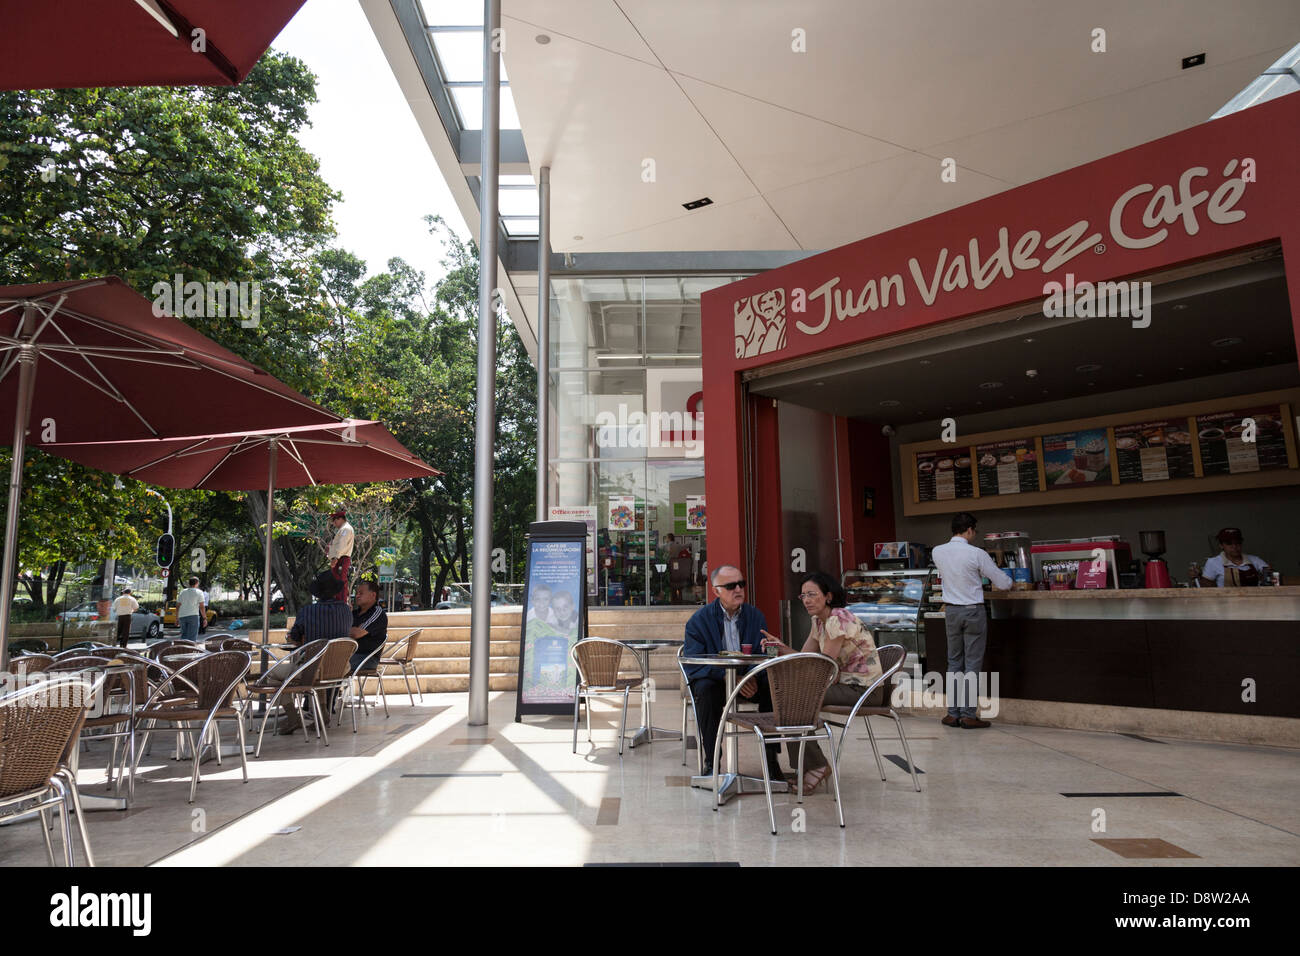 Juan Valdez Cafe, Poblado, Medellin, Colombia Stock Photo